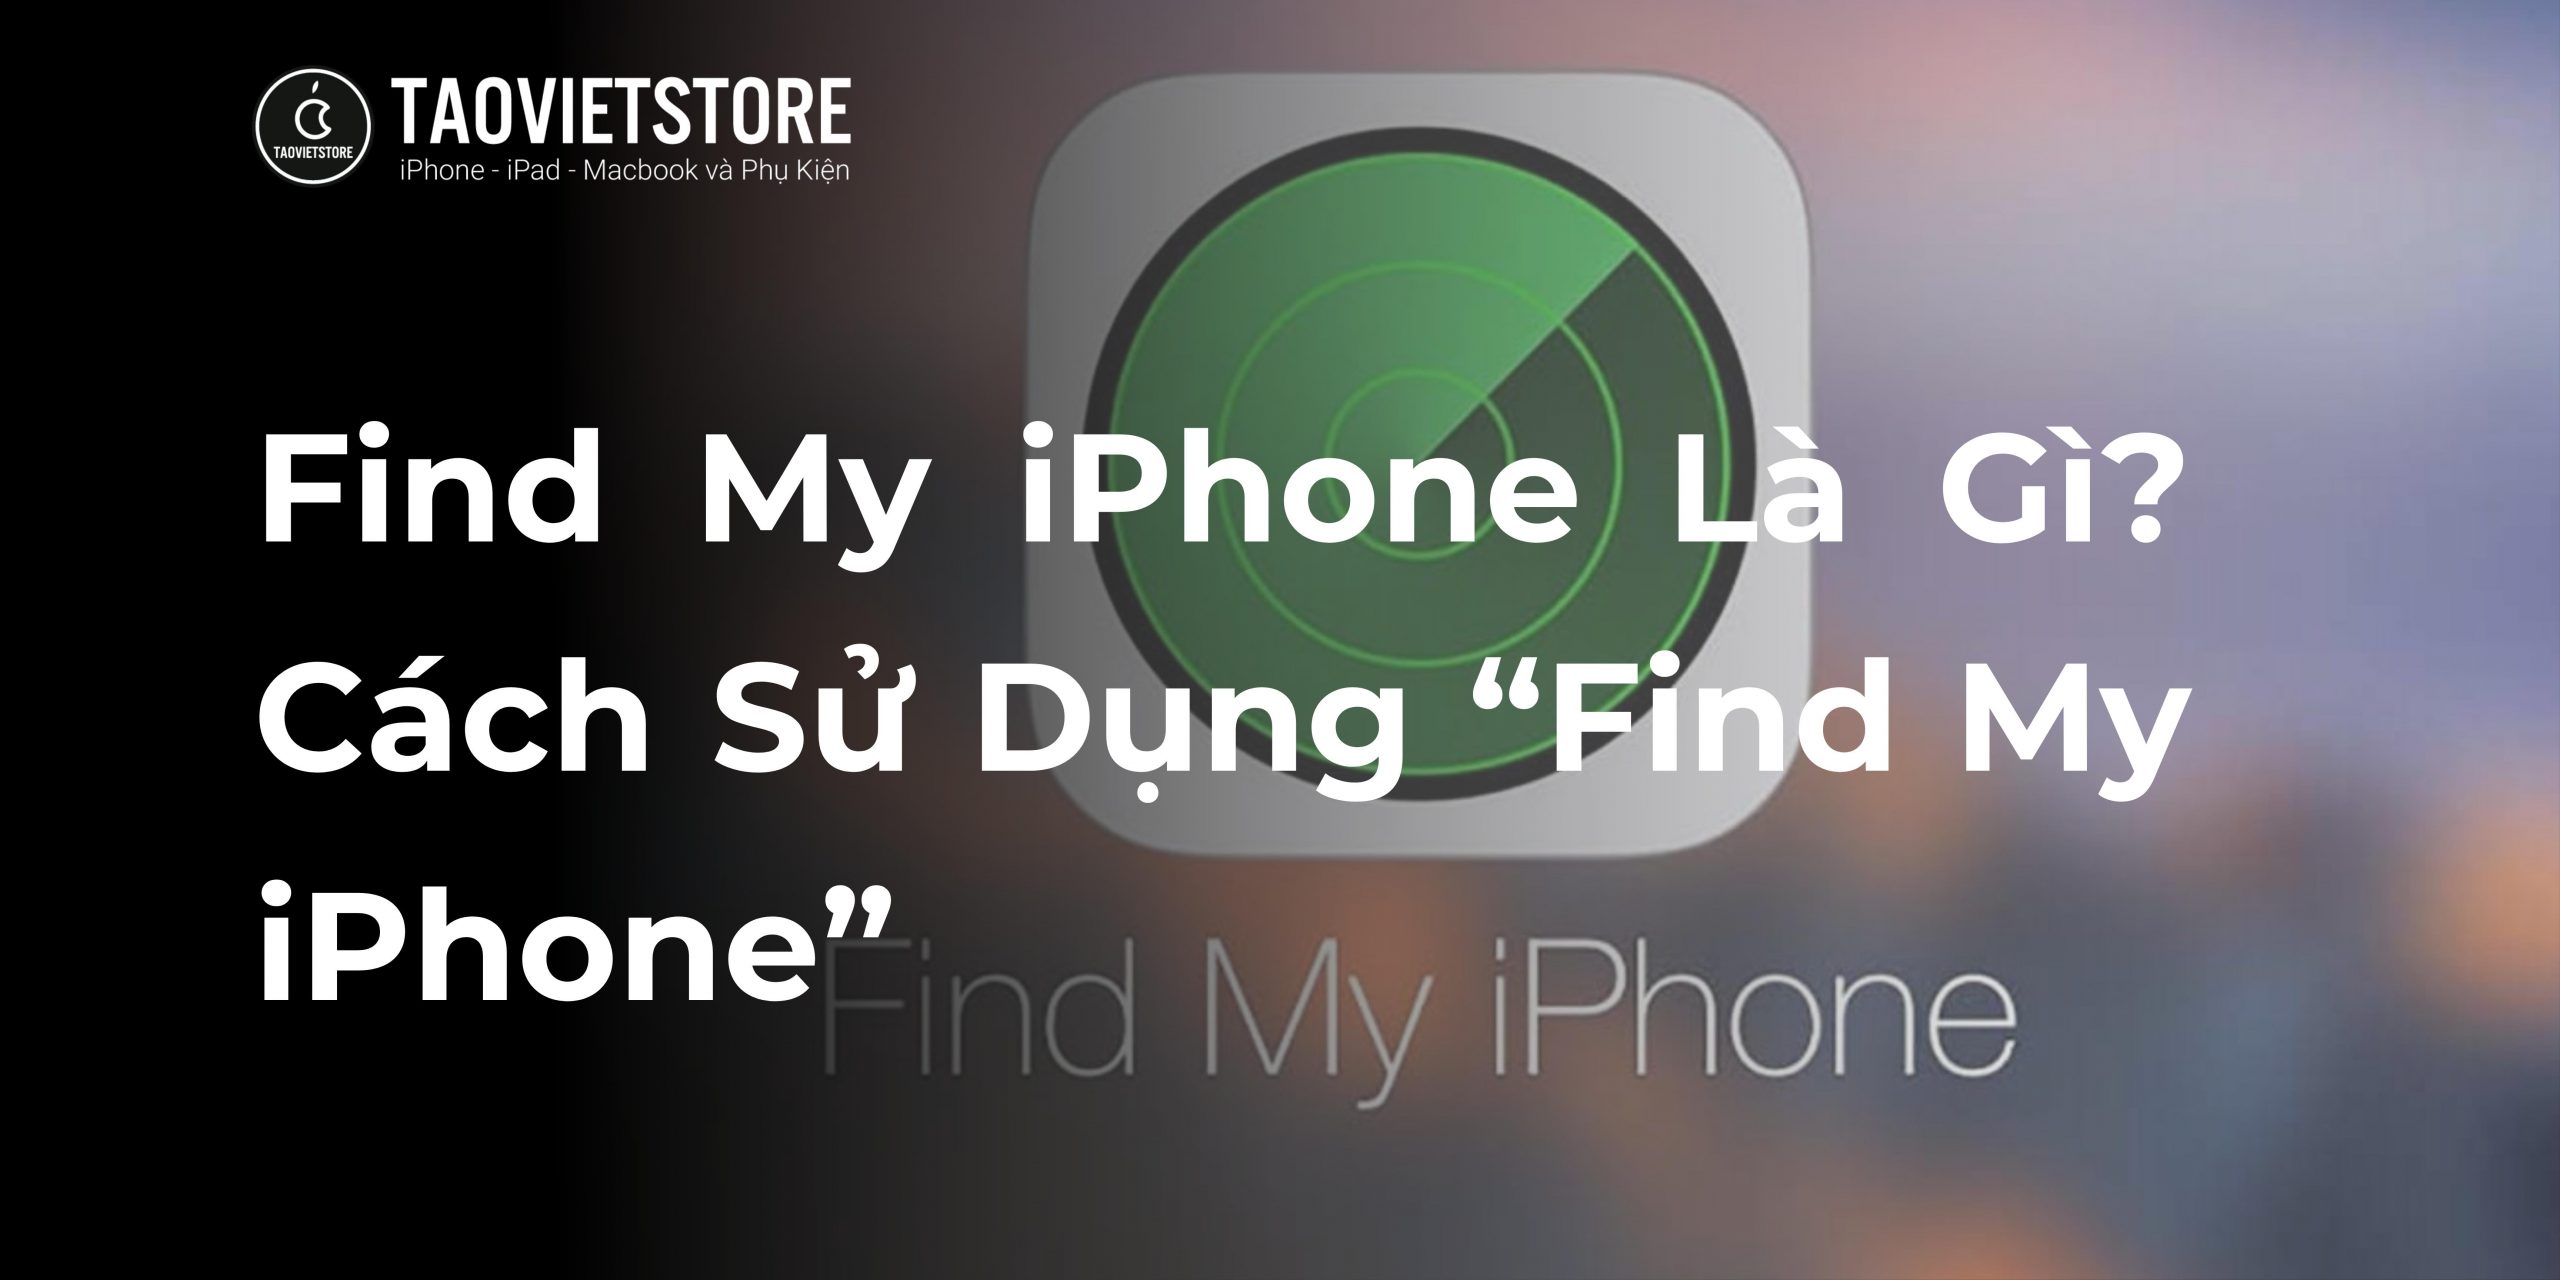 Find My iPhone Là Gì? Cách Sử Dụng “Find My iPhone”